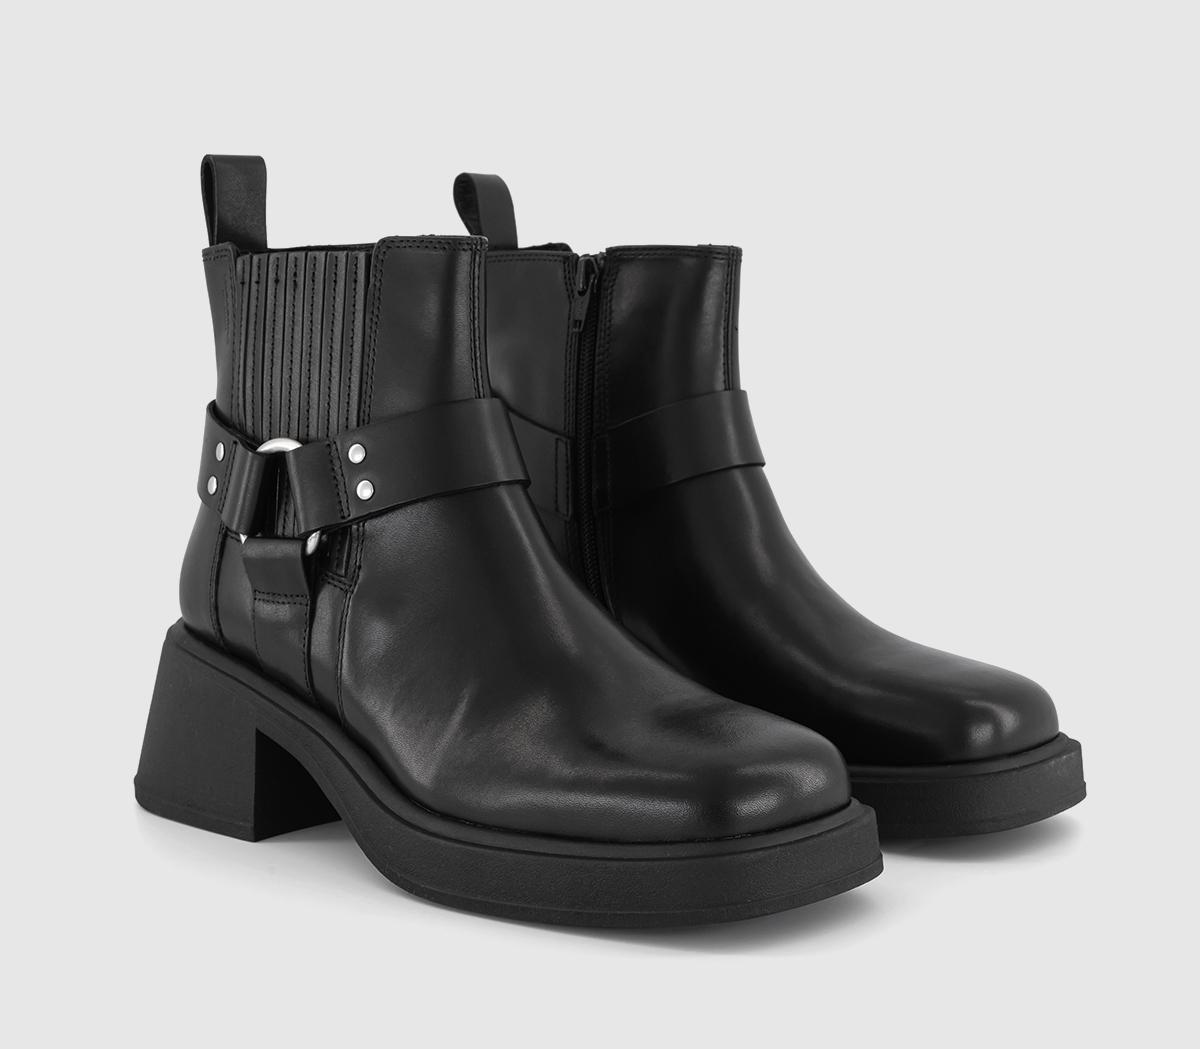 Vagabond Shoemakers Dorah Hardware Chelsea Boots Black - Women's Ankle ...